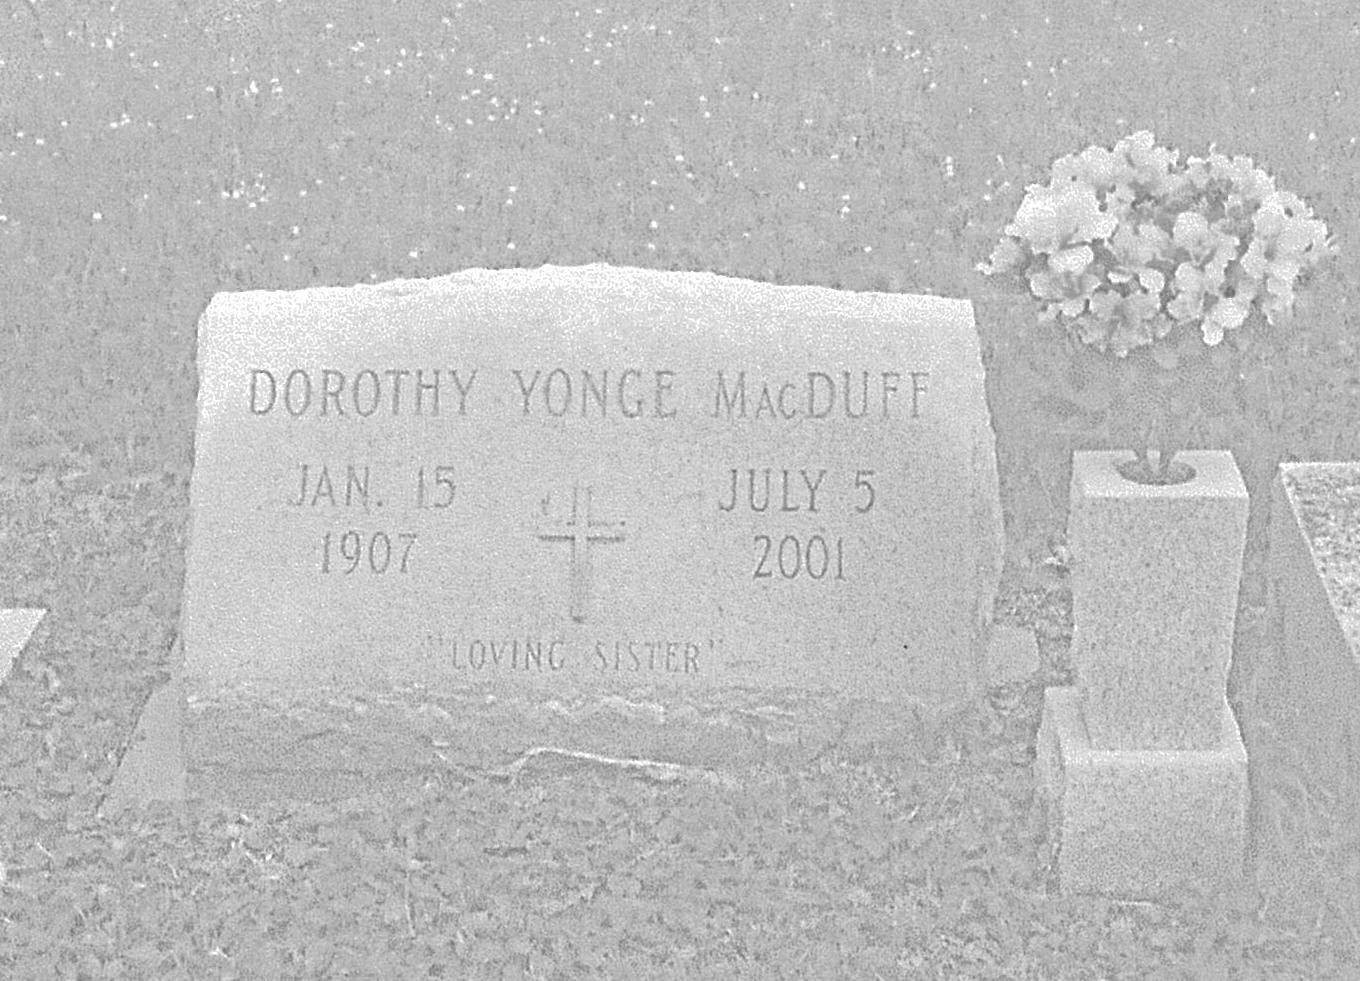 Dorothy Yonge MacDuff